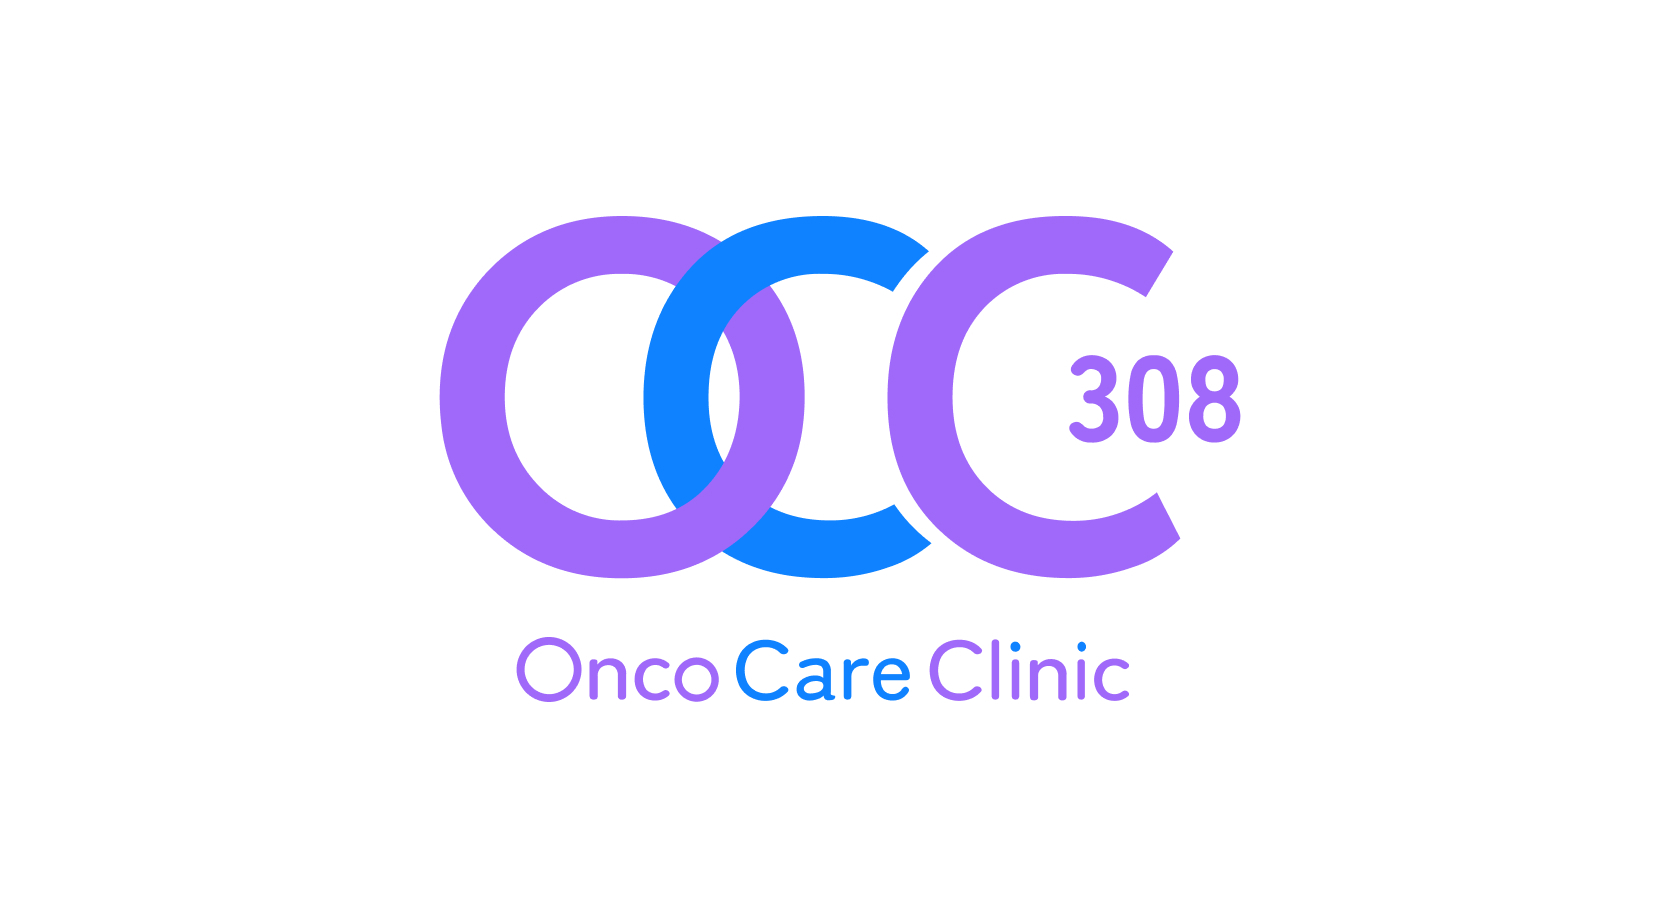 OncoCAREClinic 308 Логотип(logo)